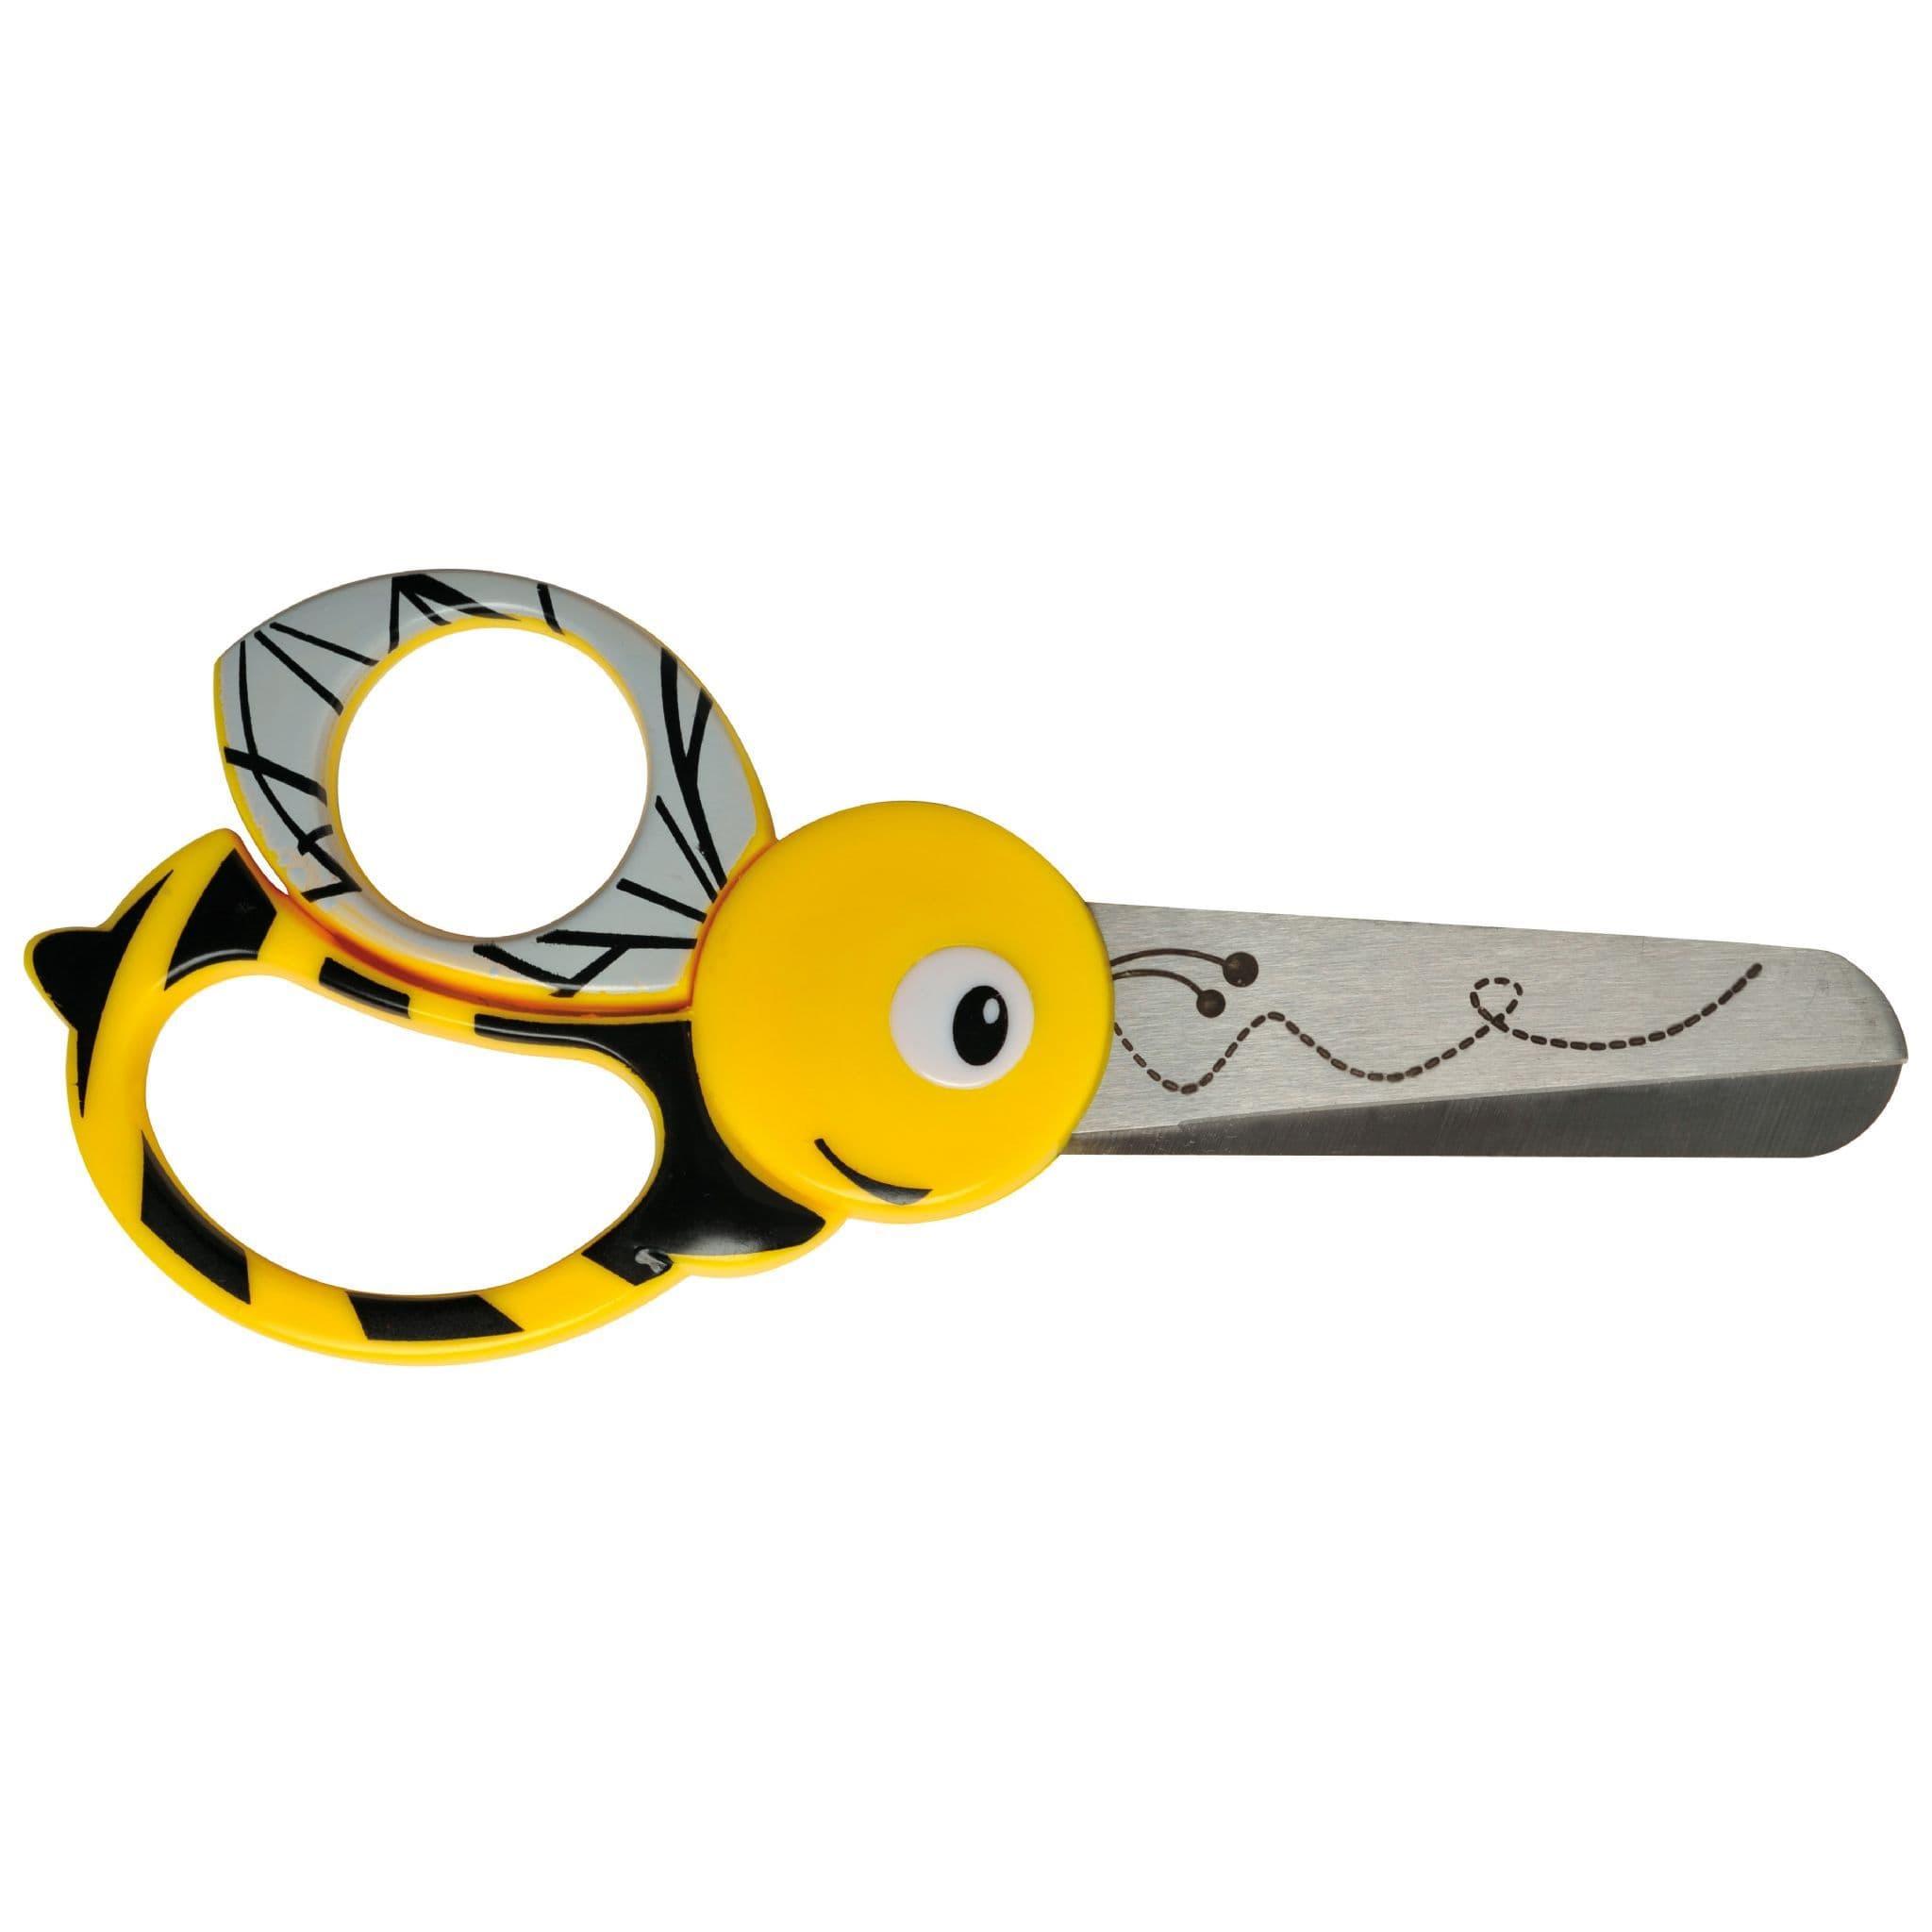 https://cdn.ecommercedns.uk/files/3/252923/2/28121552/skars-kids-universal-animal-scissors-13cm-age-4-4-designs-scisso.jpg